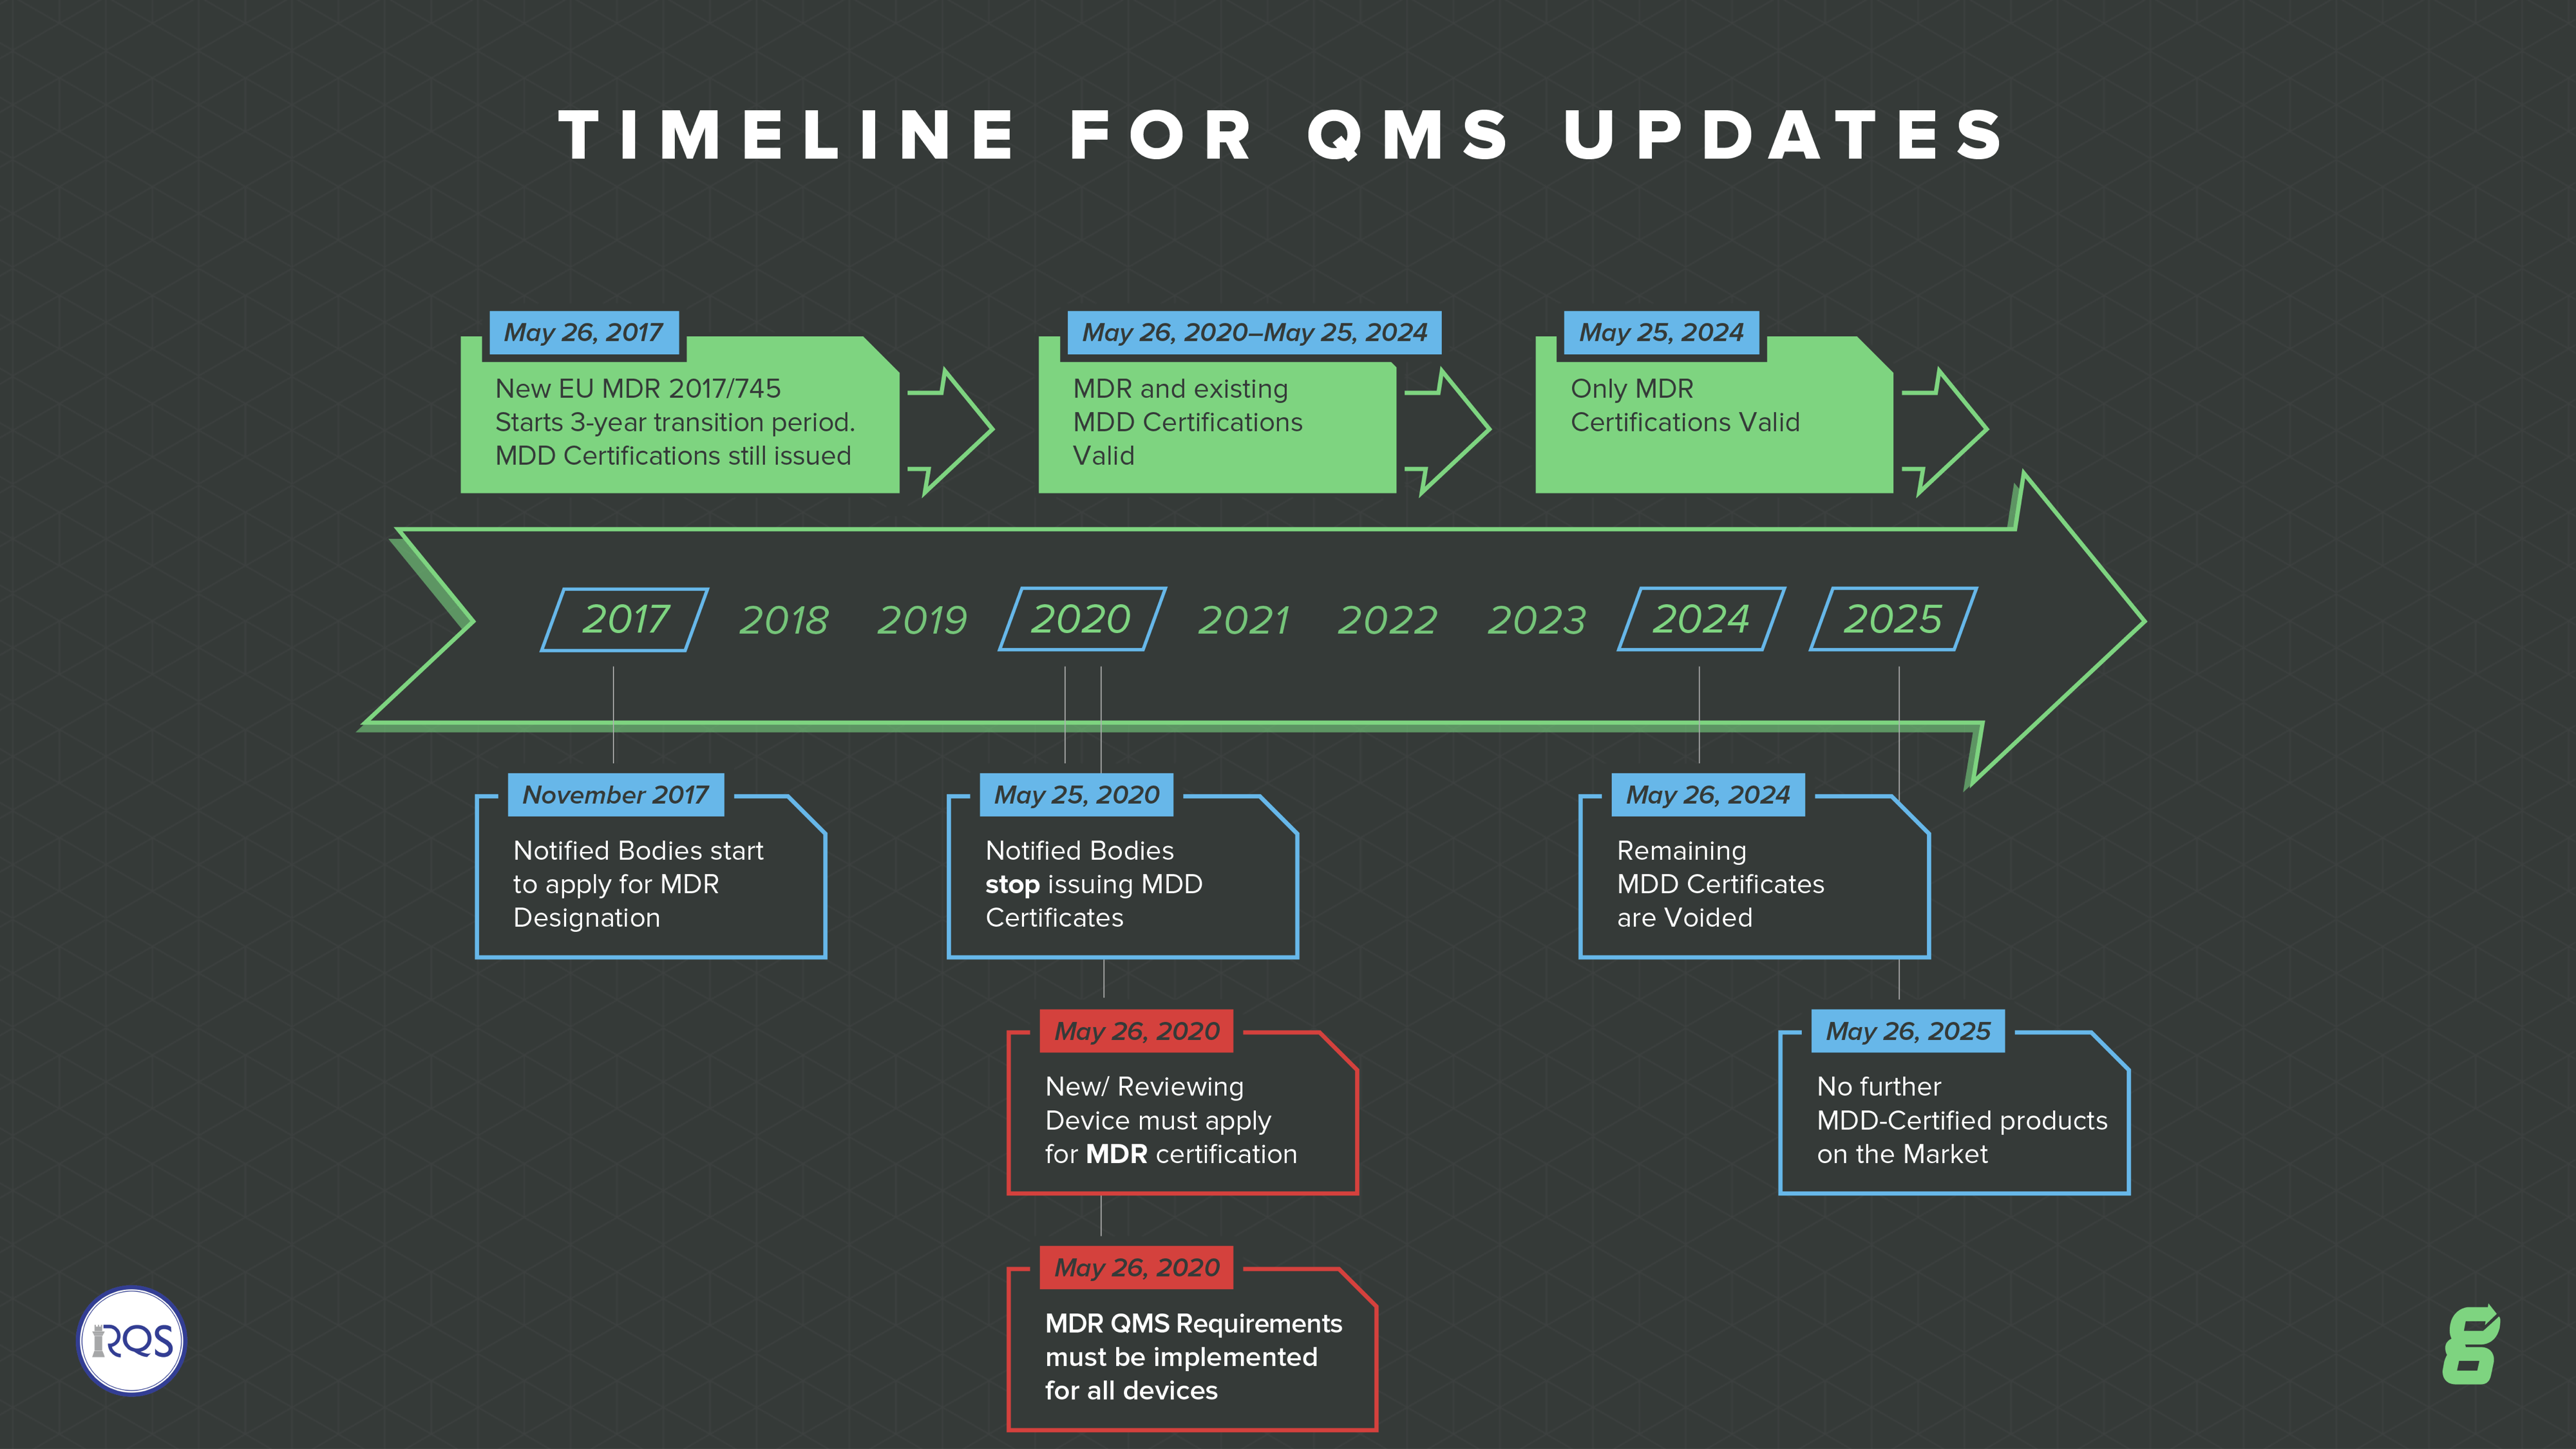 EU MDR timeline for QMS updates